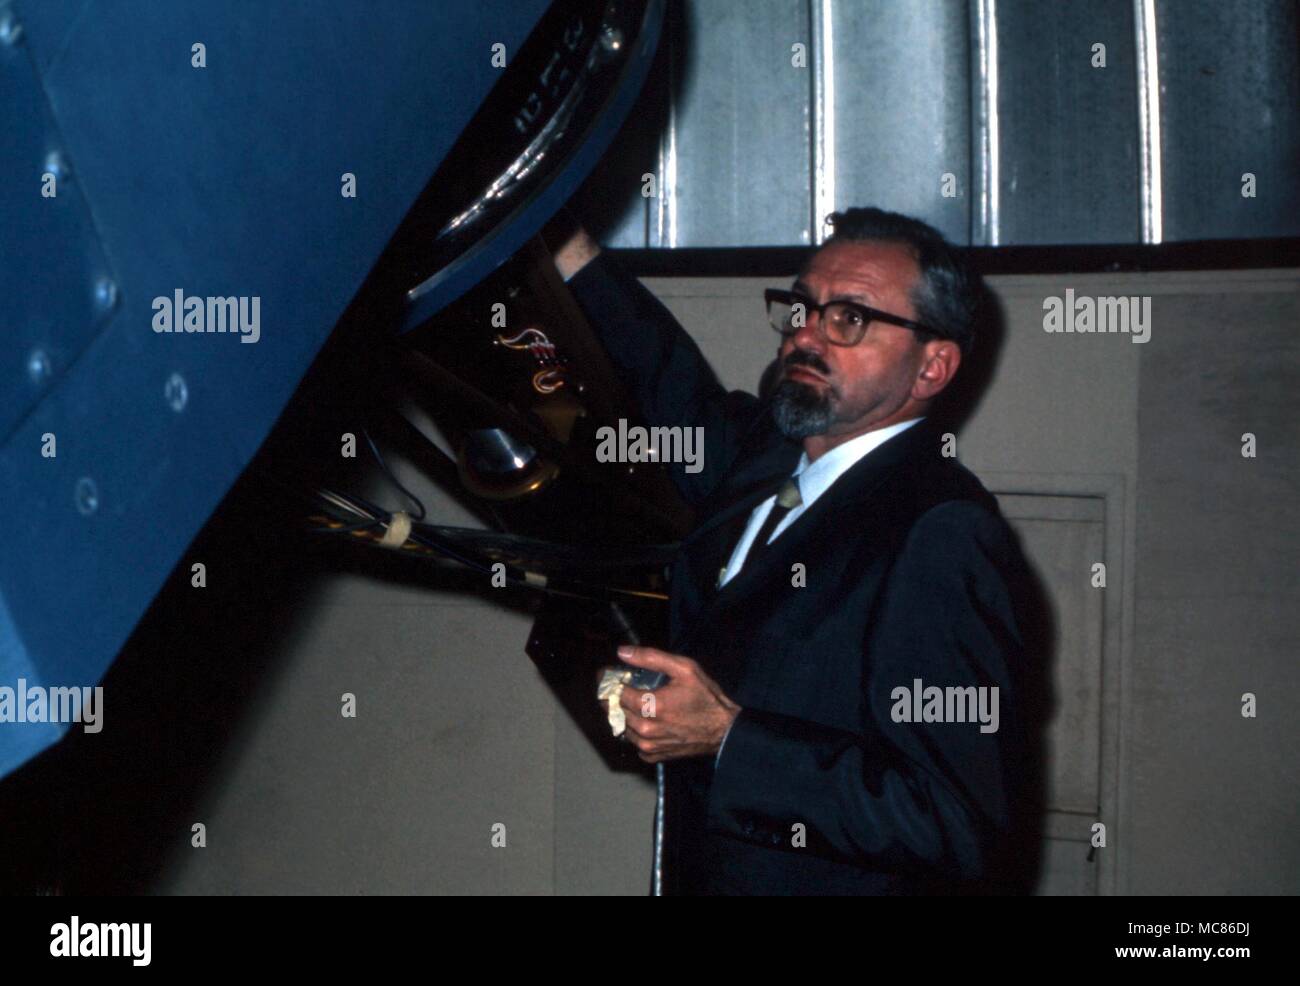 Ovni - objet volant non identifié Dr Allen Hyneck J, un astronome de l'Université du nord-ouest de temps, et a travaillé sur les rapports d'OVNIS officiellement pour le projet Blue Book. Fondée Center for UFO Studies, 1973 Banque D'Images